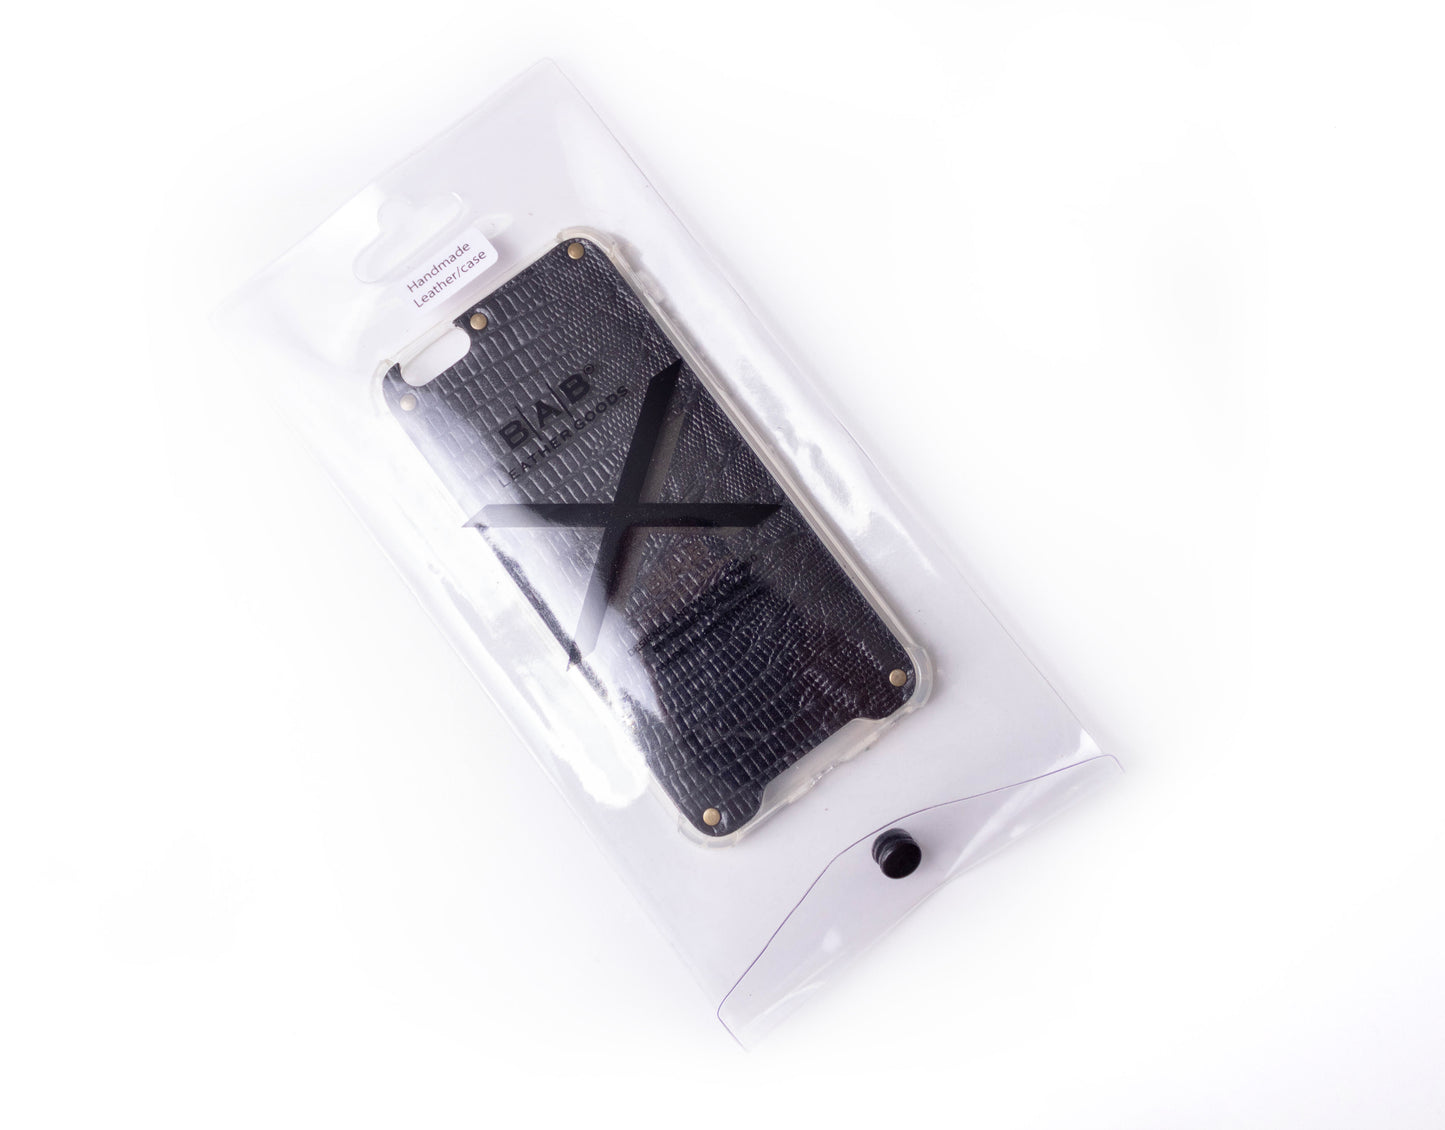 Capa para iPhone de Couro Genuíno Lagarto Preto Texturizado cortado e gravado a laser, 5 Rebites de Bronze.- F36